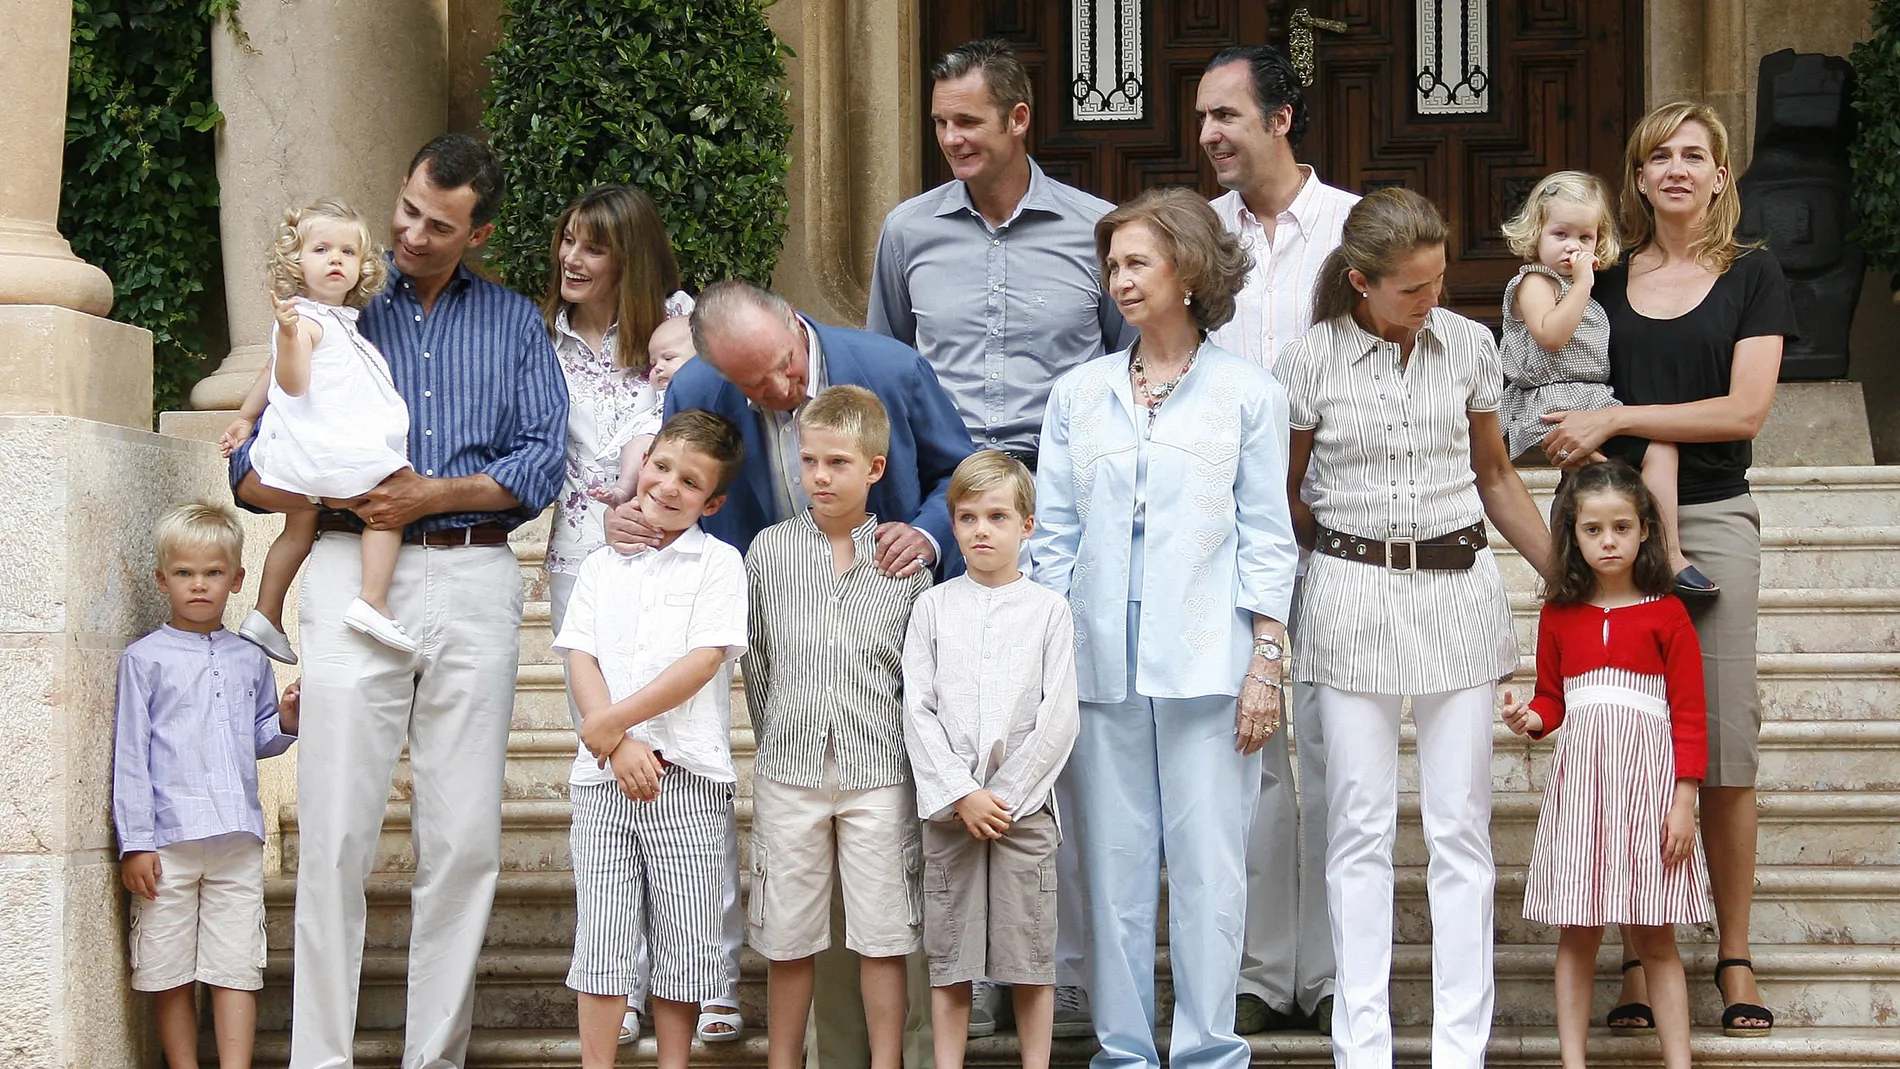 Los miembros de la Familia Real española posan ante los medios de comunicación con motivo de su estancia en el Palacio de Marivent de Palma de Mallorca durante el verano.